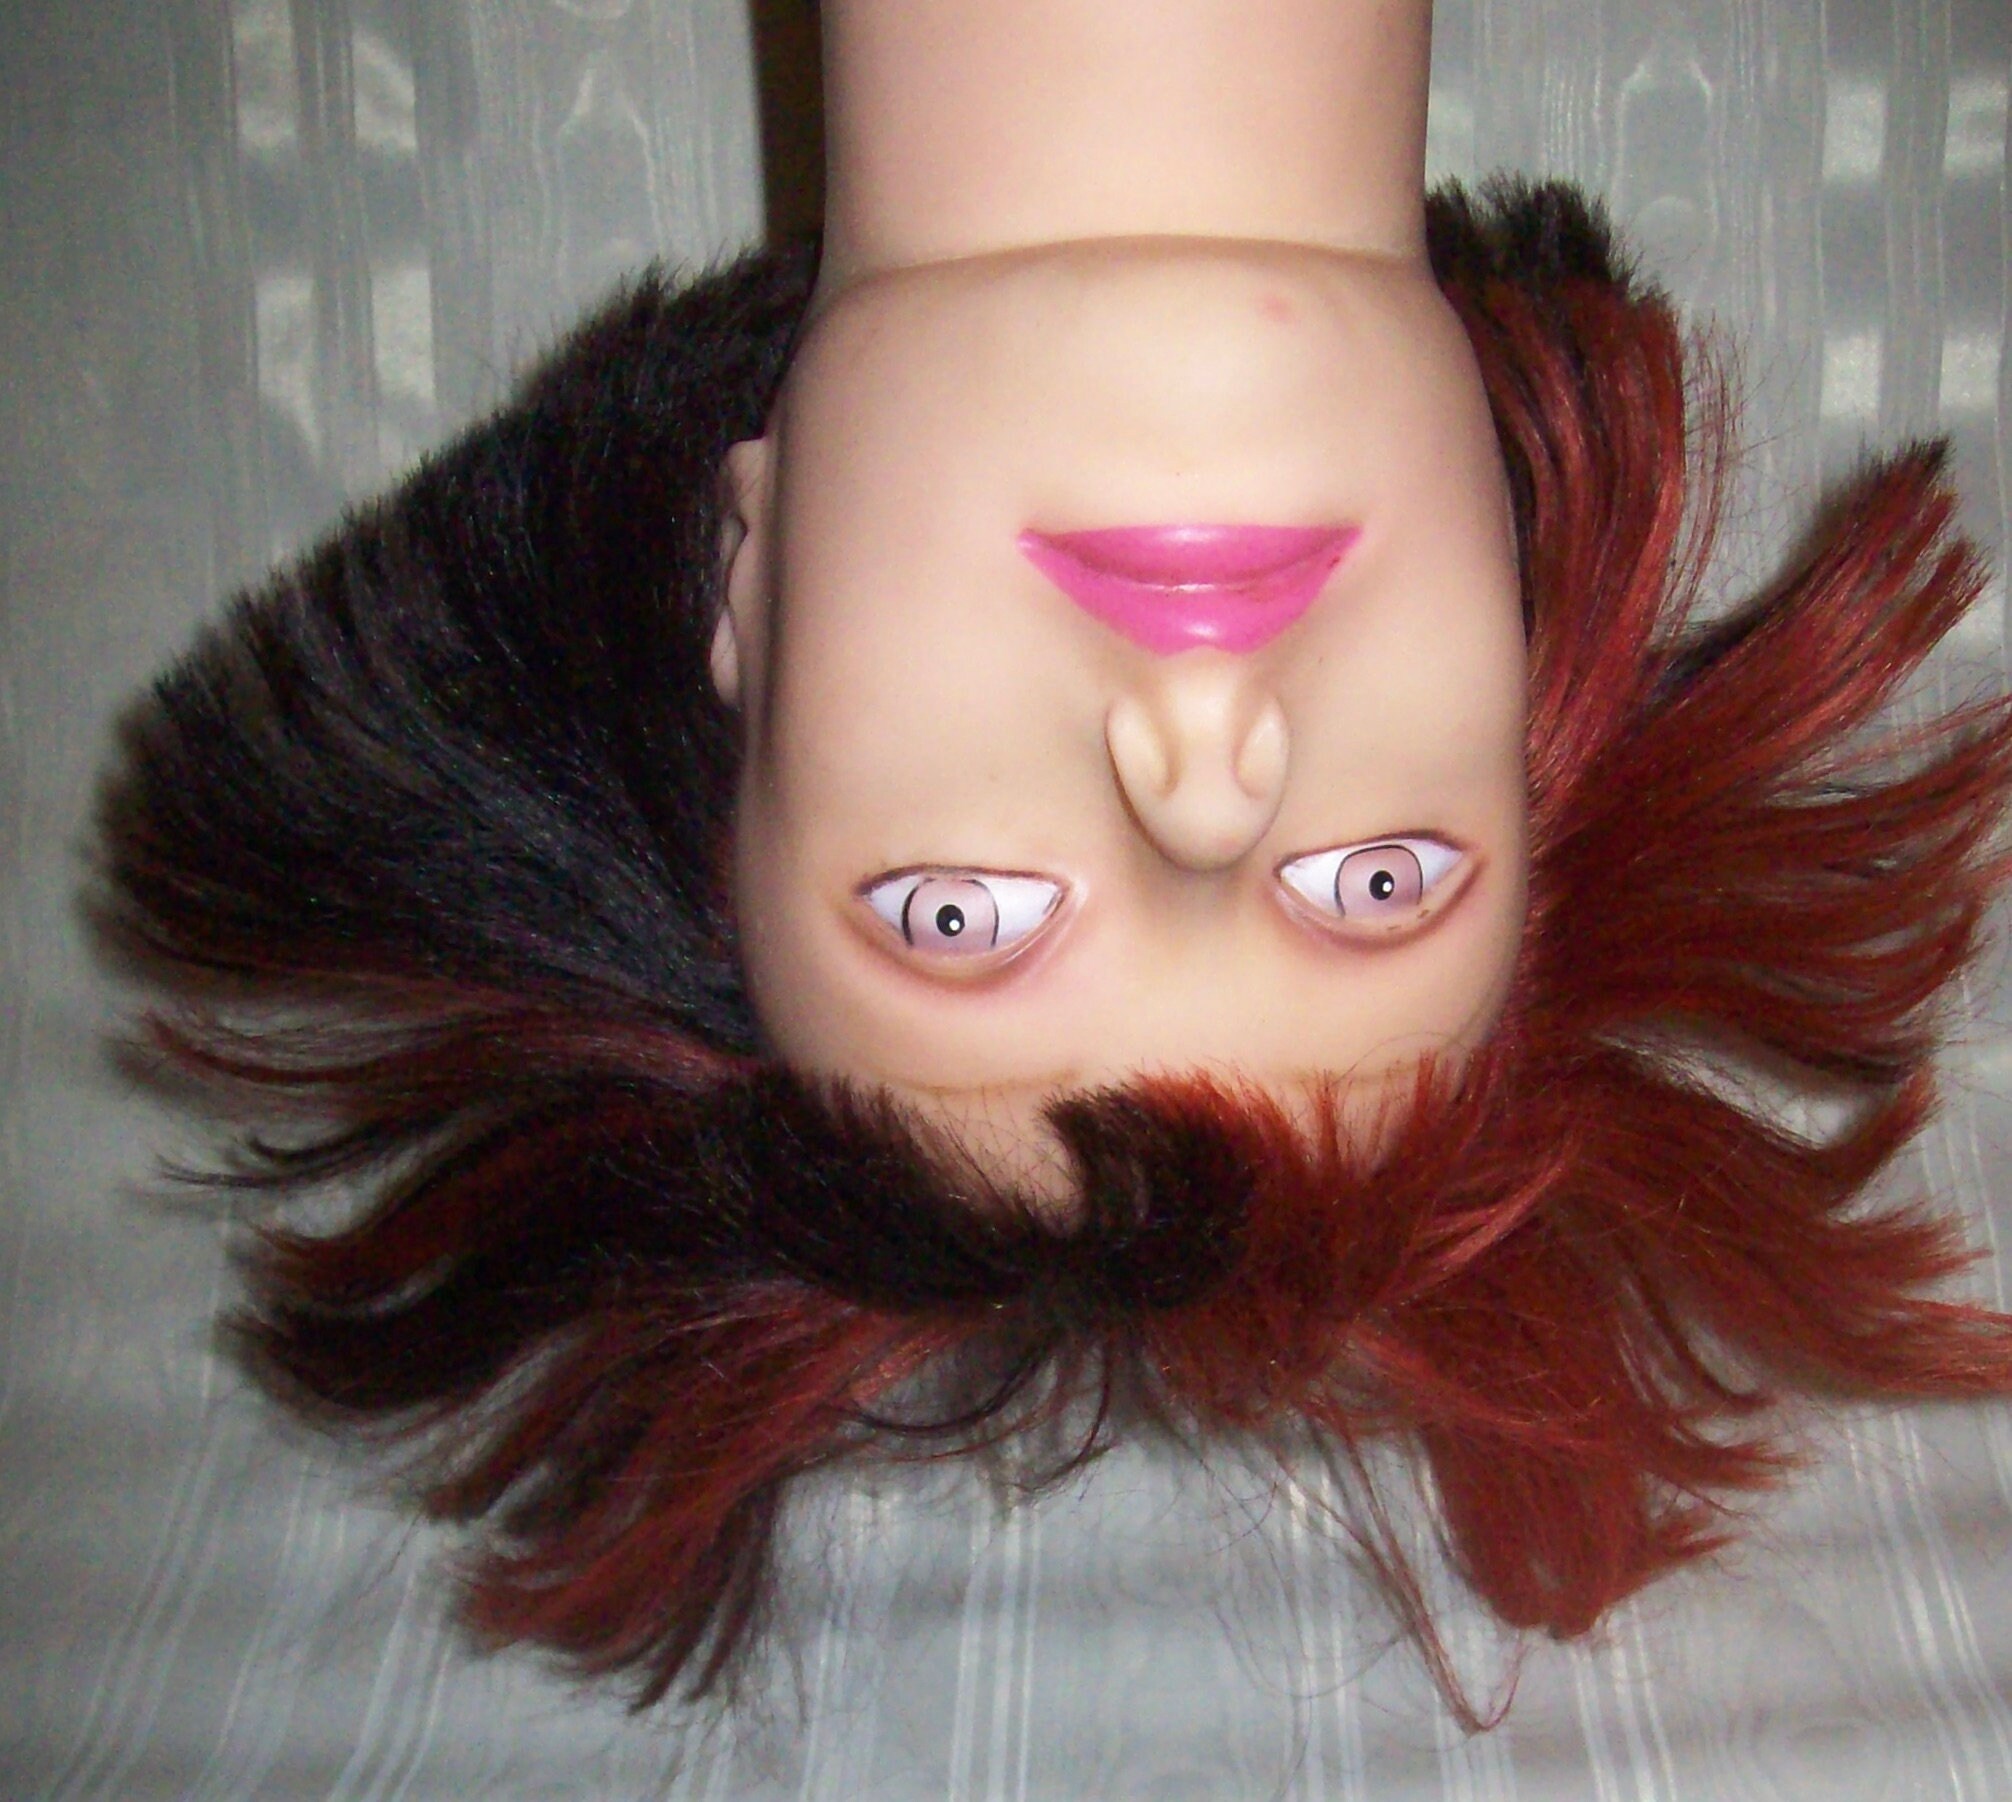 Diane 100% Human Hair Mannequin Head for Male # DMM010B